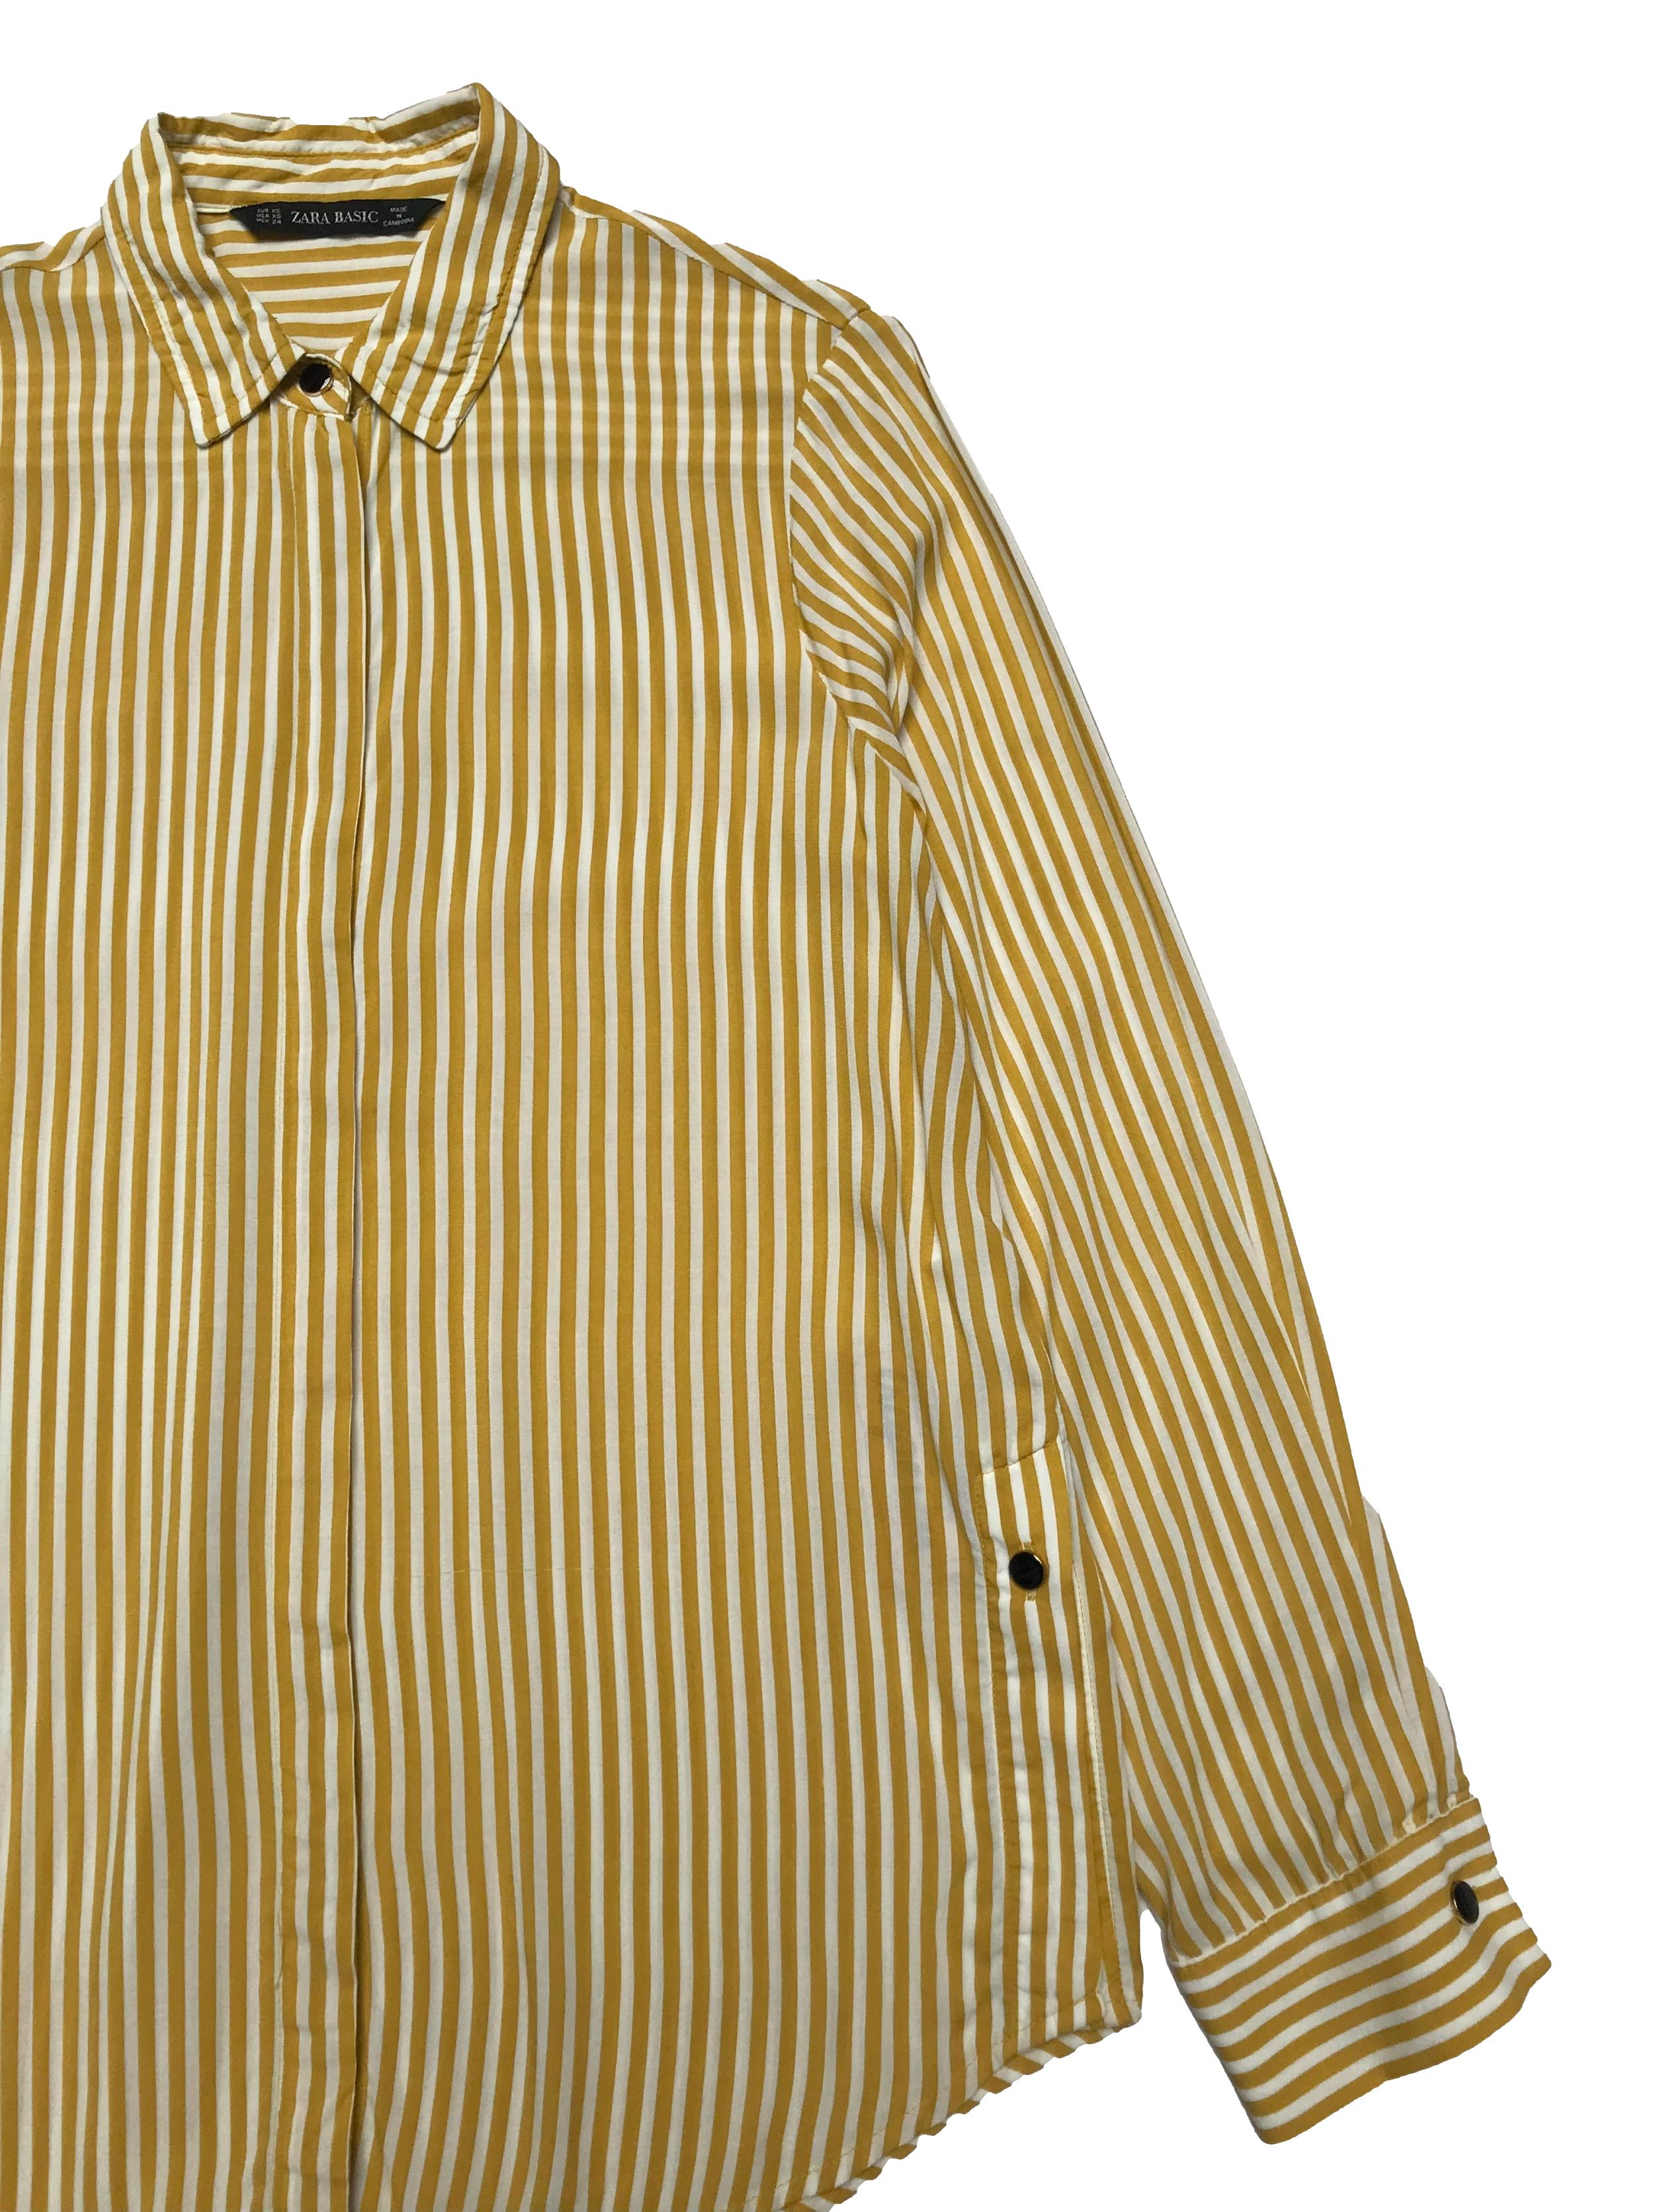 Blusa Zara a rayas blancas y amarillas, botones metálicos en delantero, puños y aberturas laterales, tela viscosa fresca. Busto 96cm Largo 57-66cm